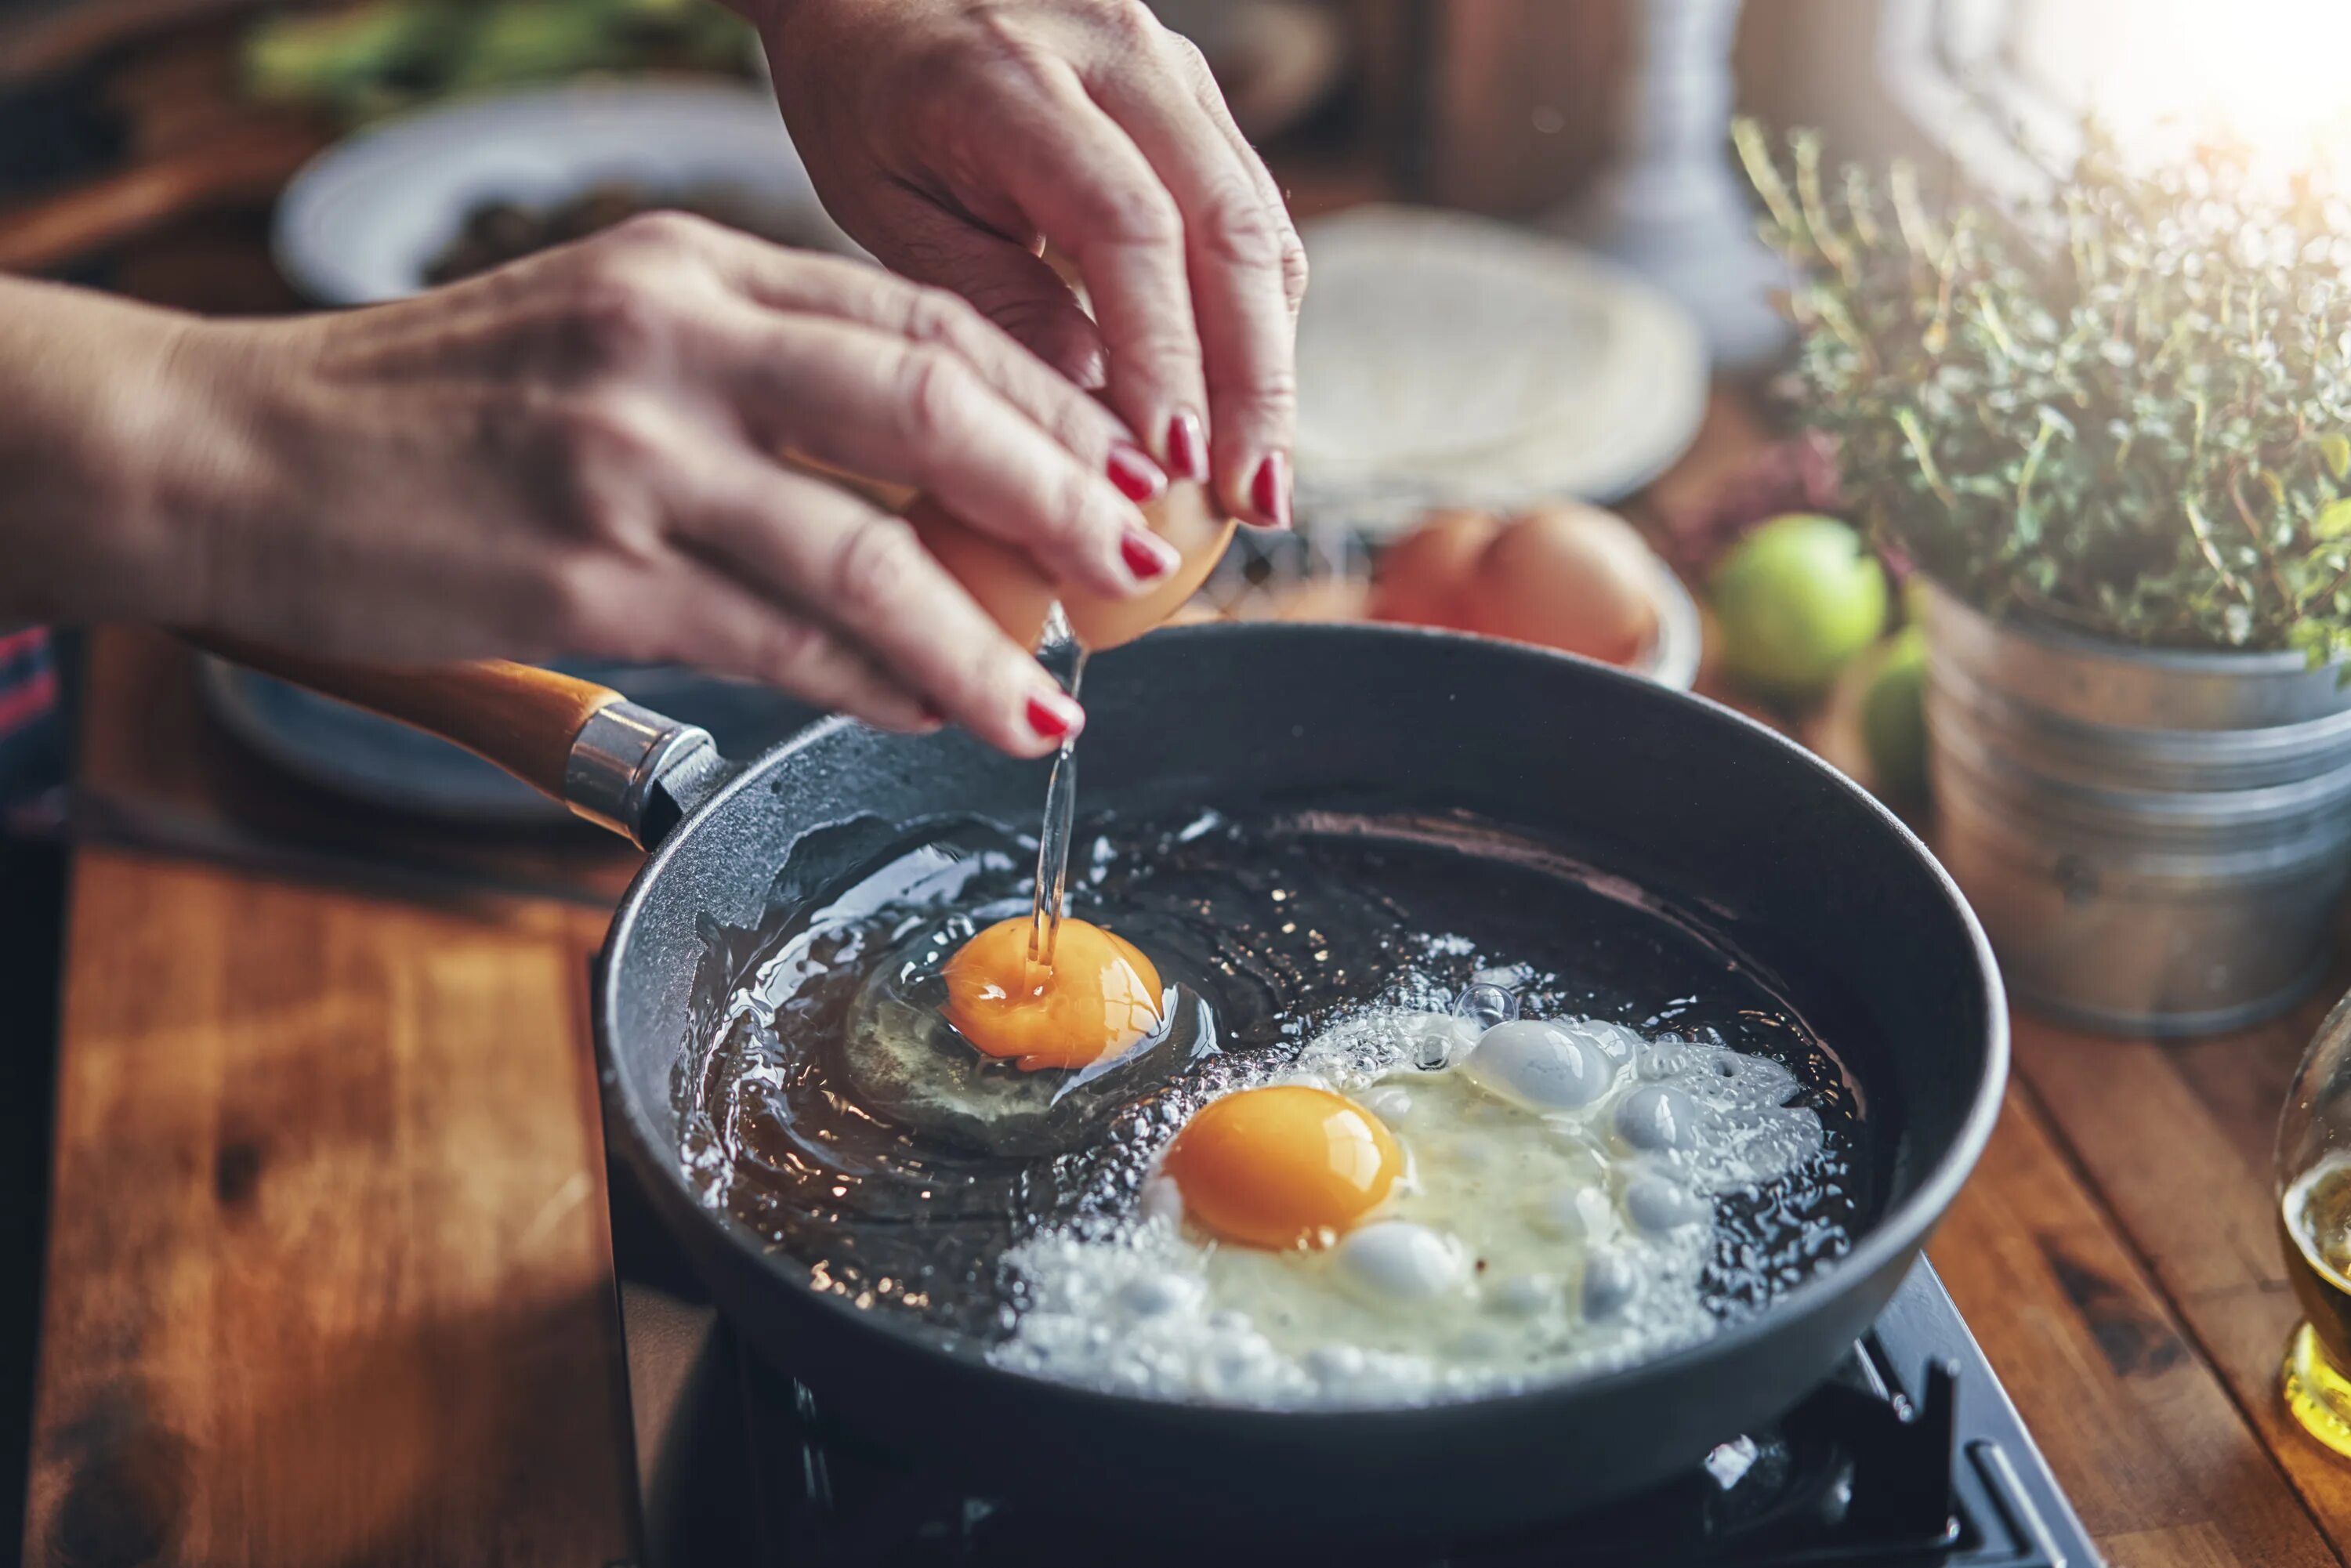 Сковорода с яичницей. Сковородка для яичницы. Готовка. Процесс приготовления еды. Яйцо на воде в сковороде